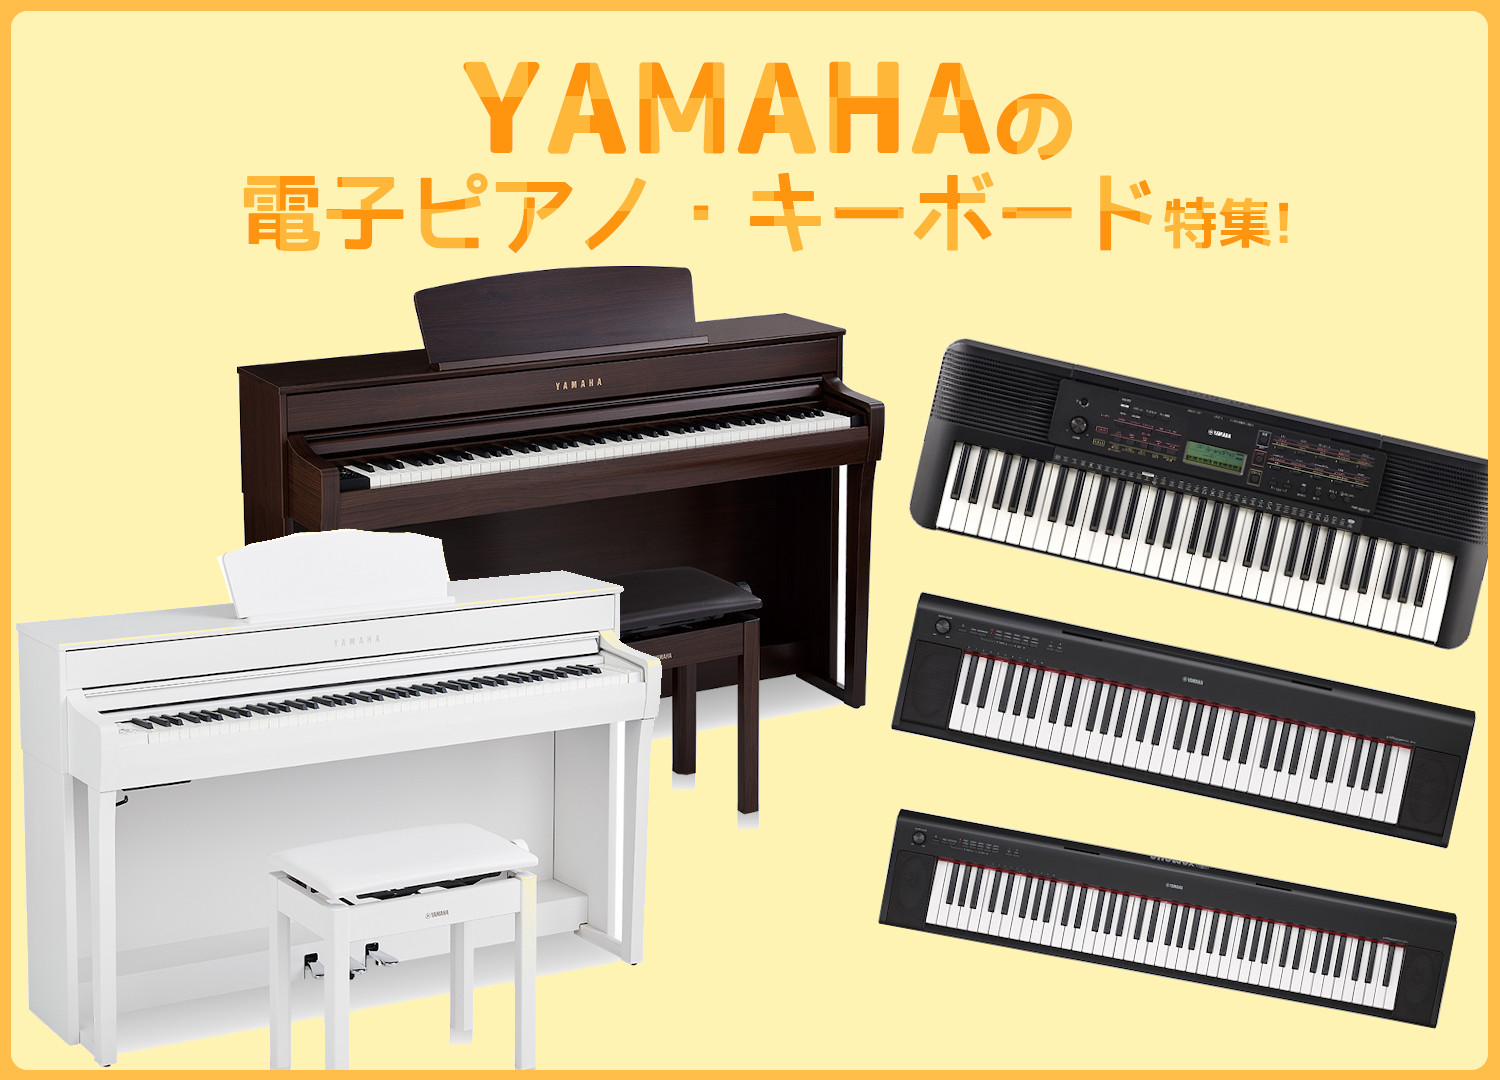 【店頭販売中】YAMAHAの電子ピアノとキーボードをご紹介！ 島村楽器大分店では、YAMAHA (ヤマハ)の電子ピアノ、キーボードを販売中です！こちらの記事では、YAMAHAの電子ピアノ・キーボードを商品ごとにご紹介させて頂きます♪ CONTENTSYAMAHAの電子ピアノについて店頭展示中！YAM […]